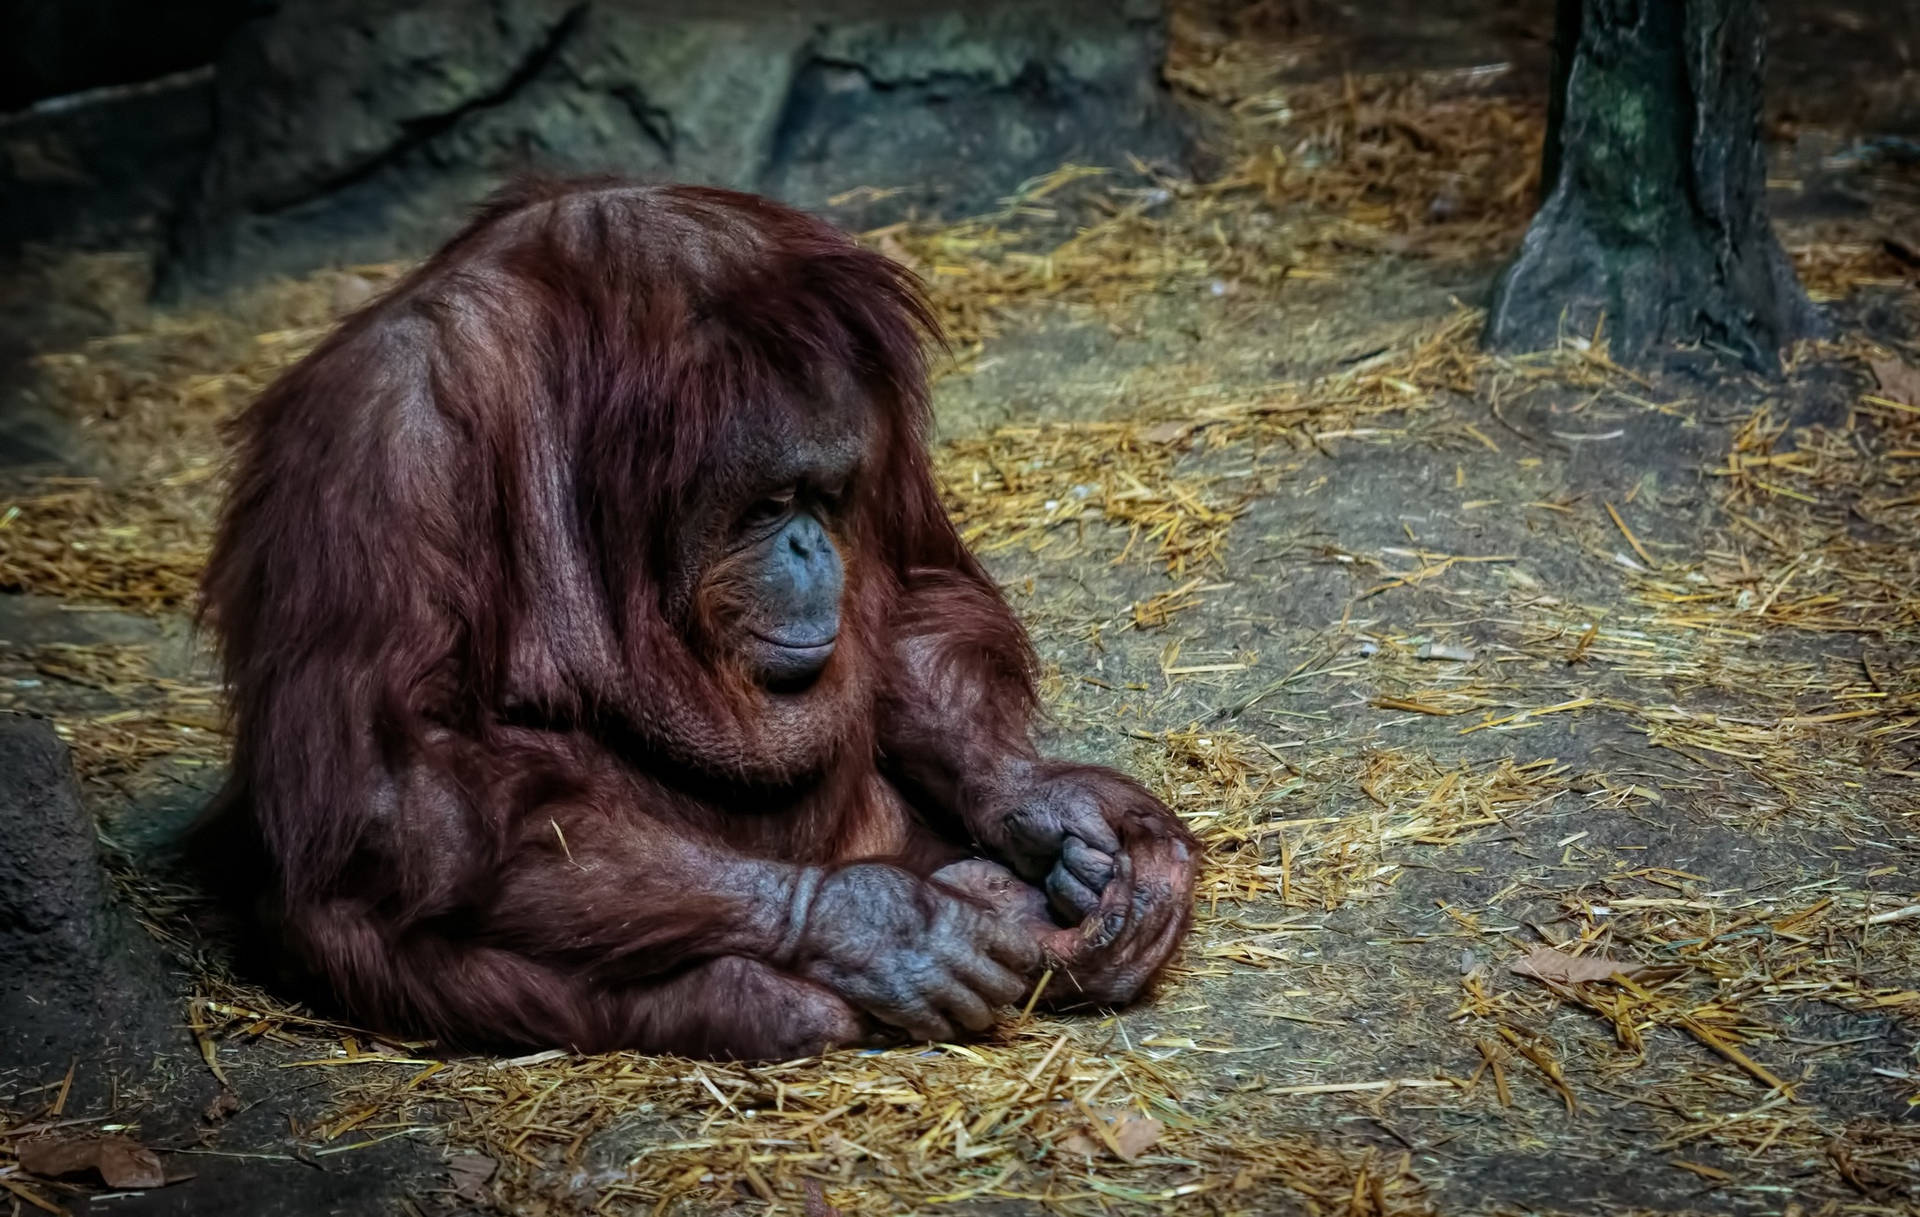 Sad Aesthetic Monkey At Zoo Background